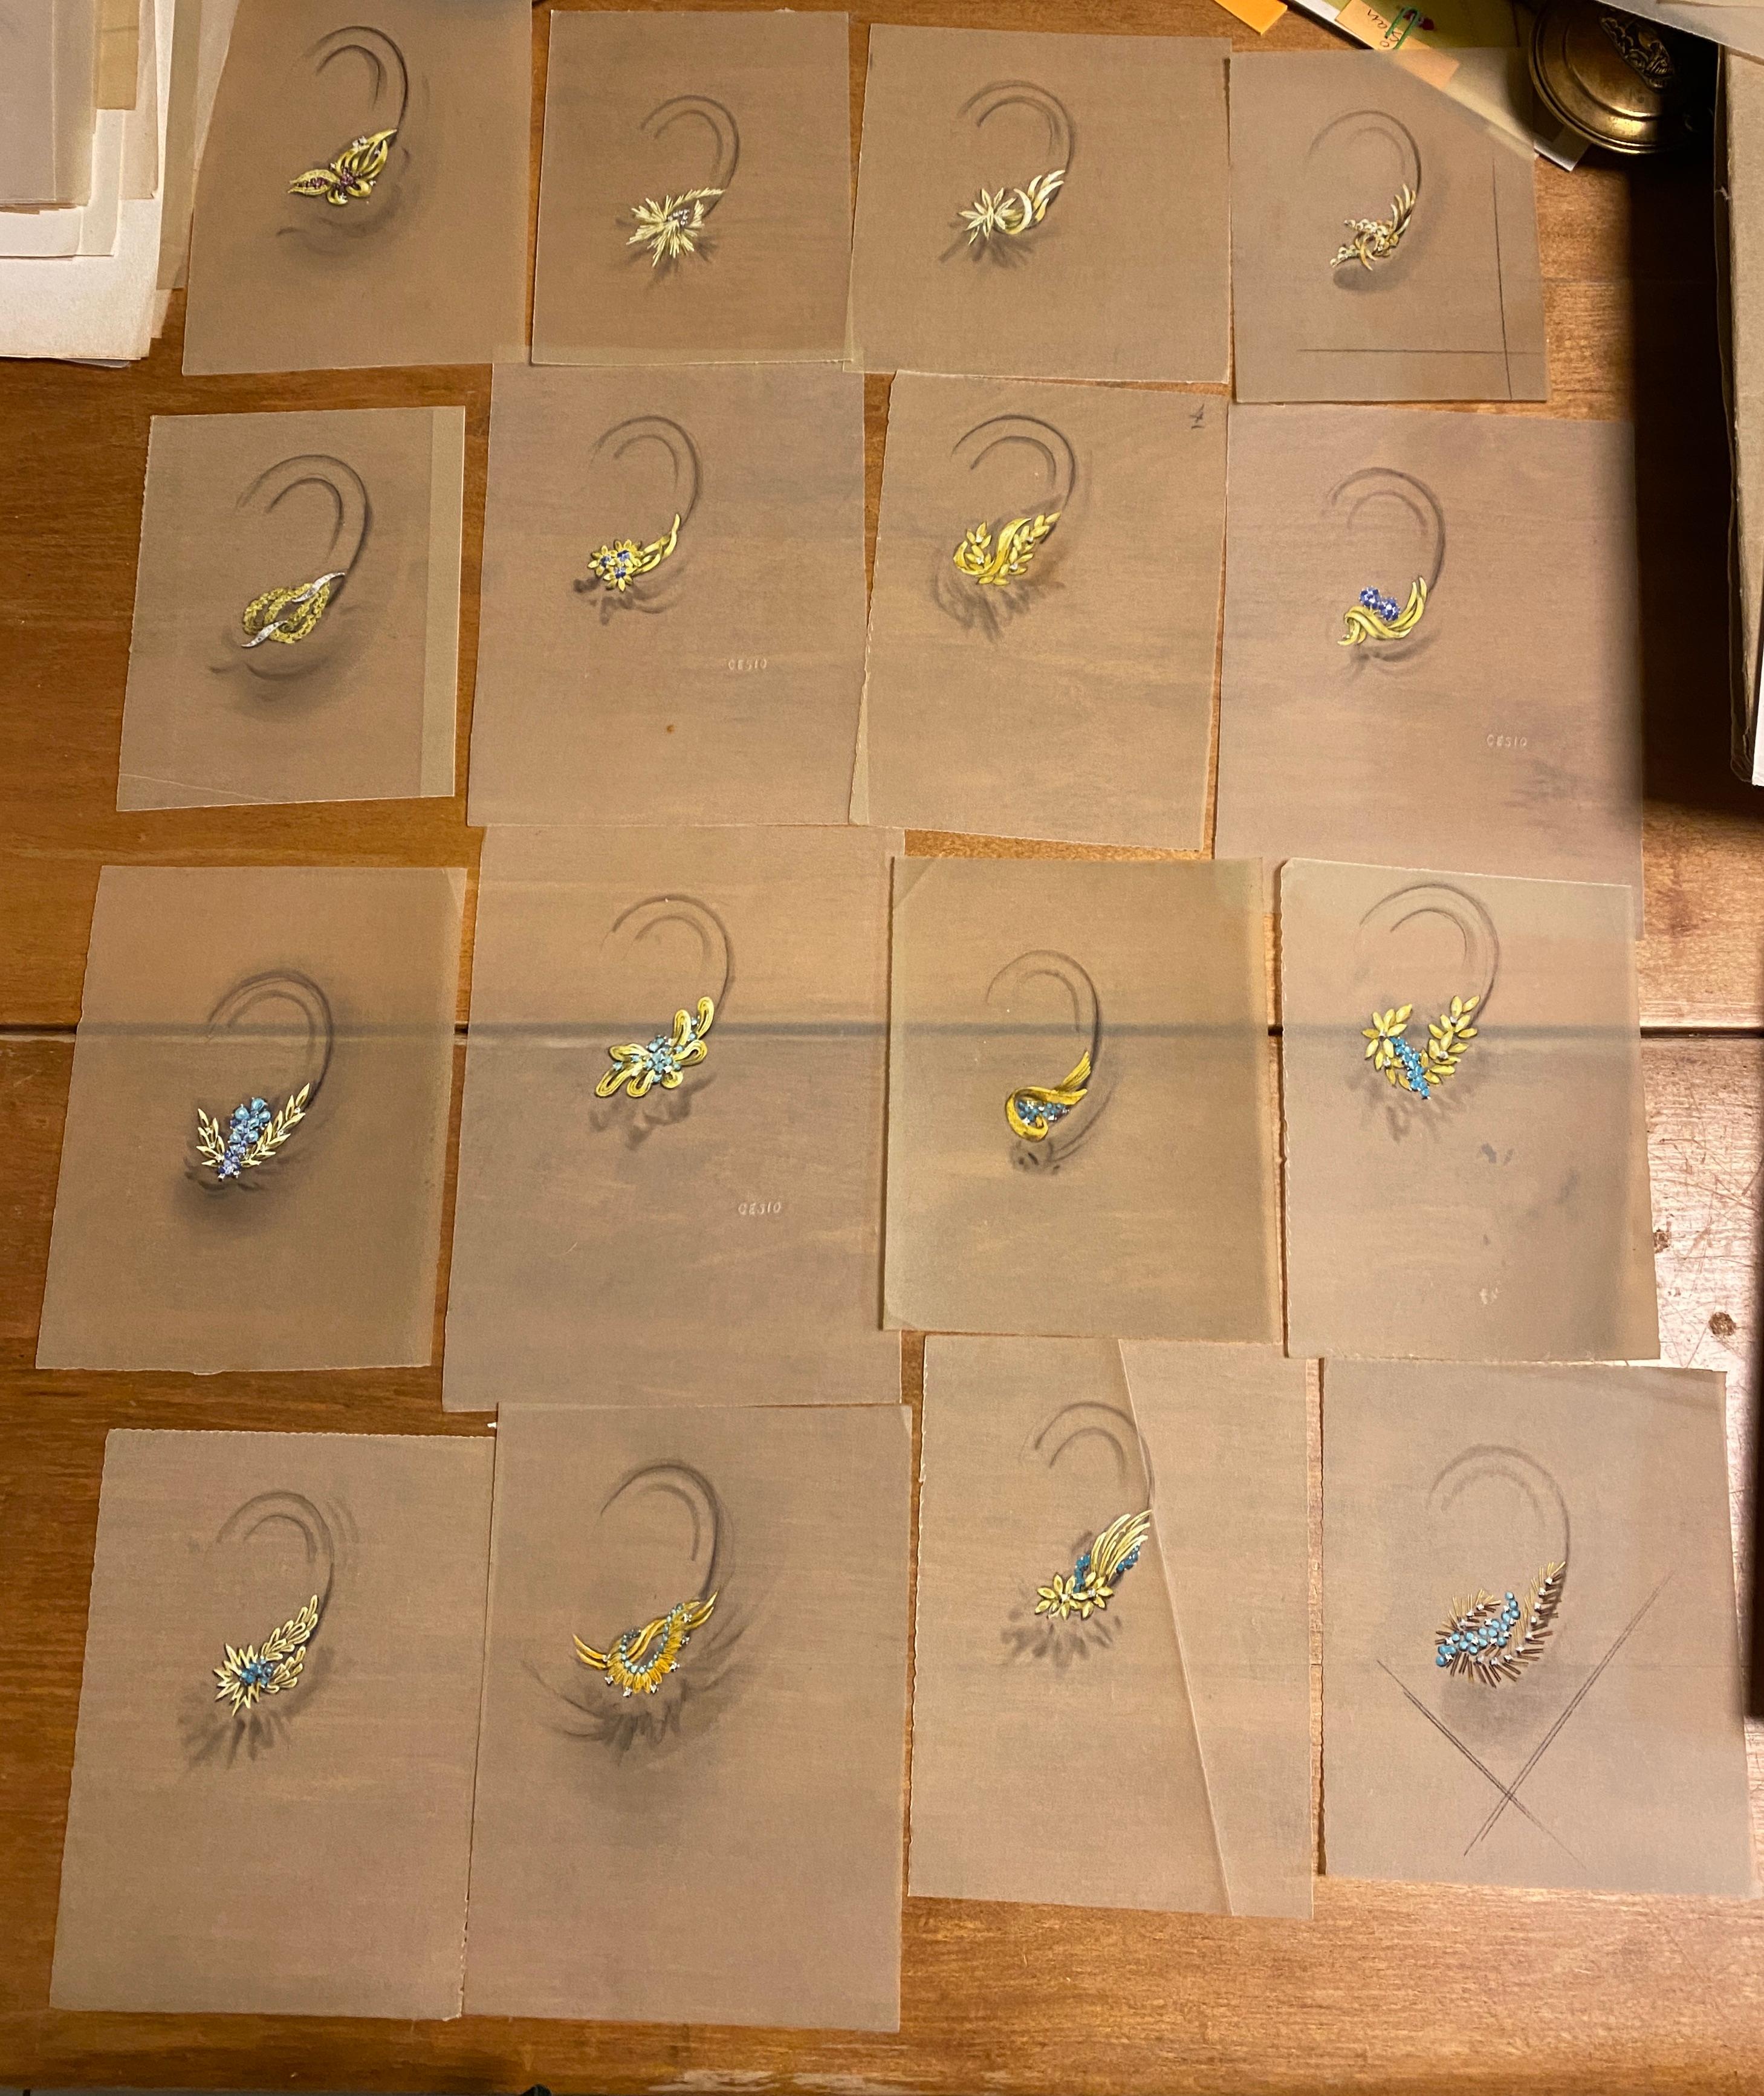 
Une collection de magnifiques dessins de bijoux représentant 18 modèles divers de boucles d'oreilles à clip populaires dans les années 1970 et 1980, 3 initiales CES10, chacune à la gouache sur papier calque beige, chacune découpée dans des feuilles